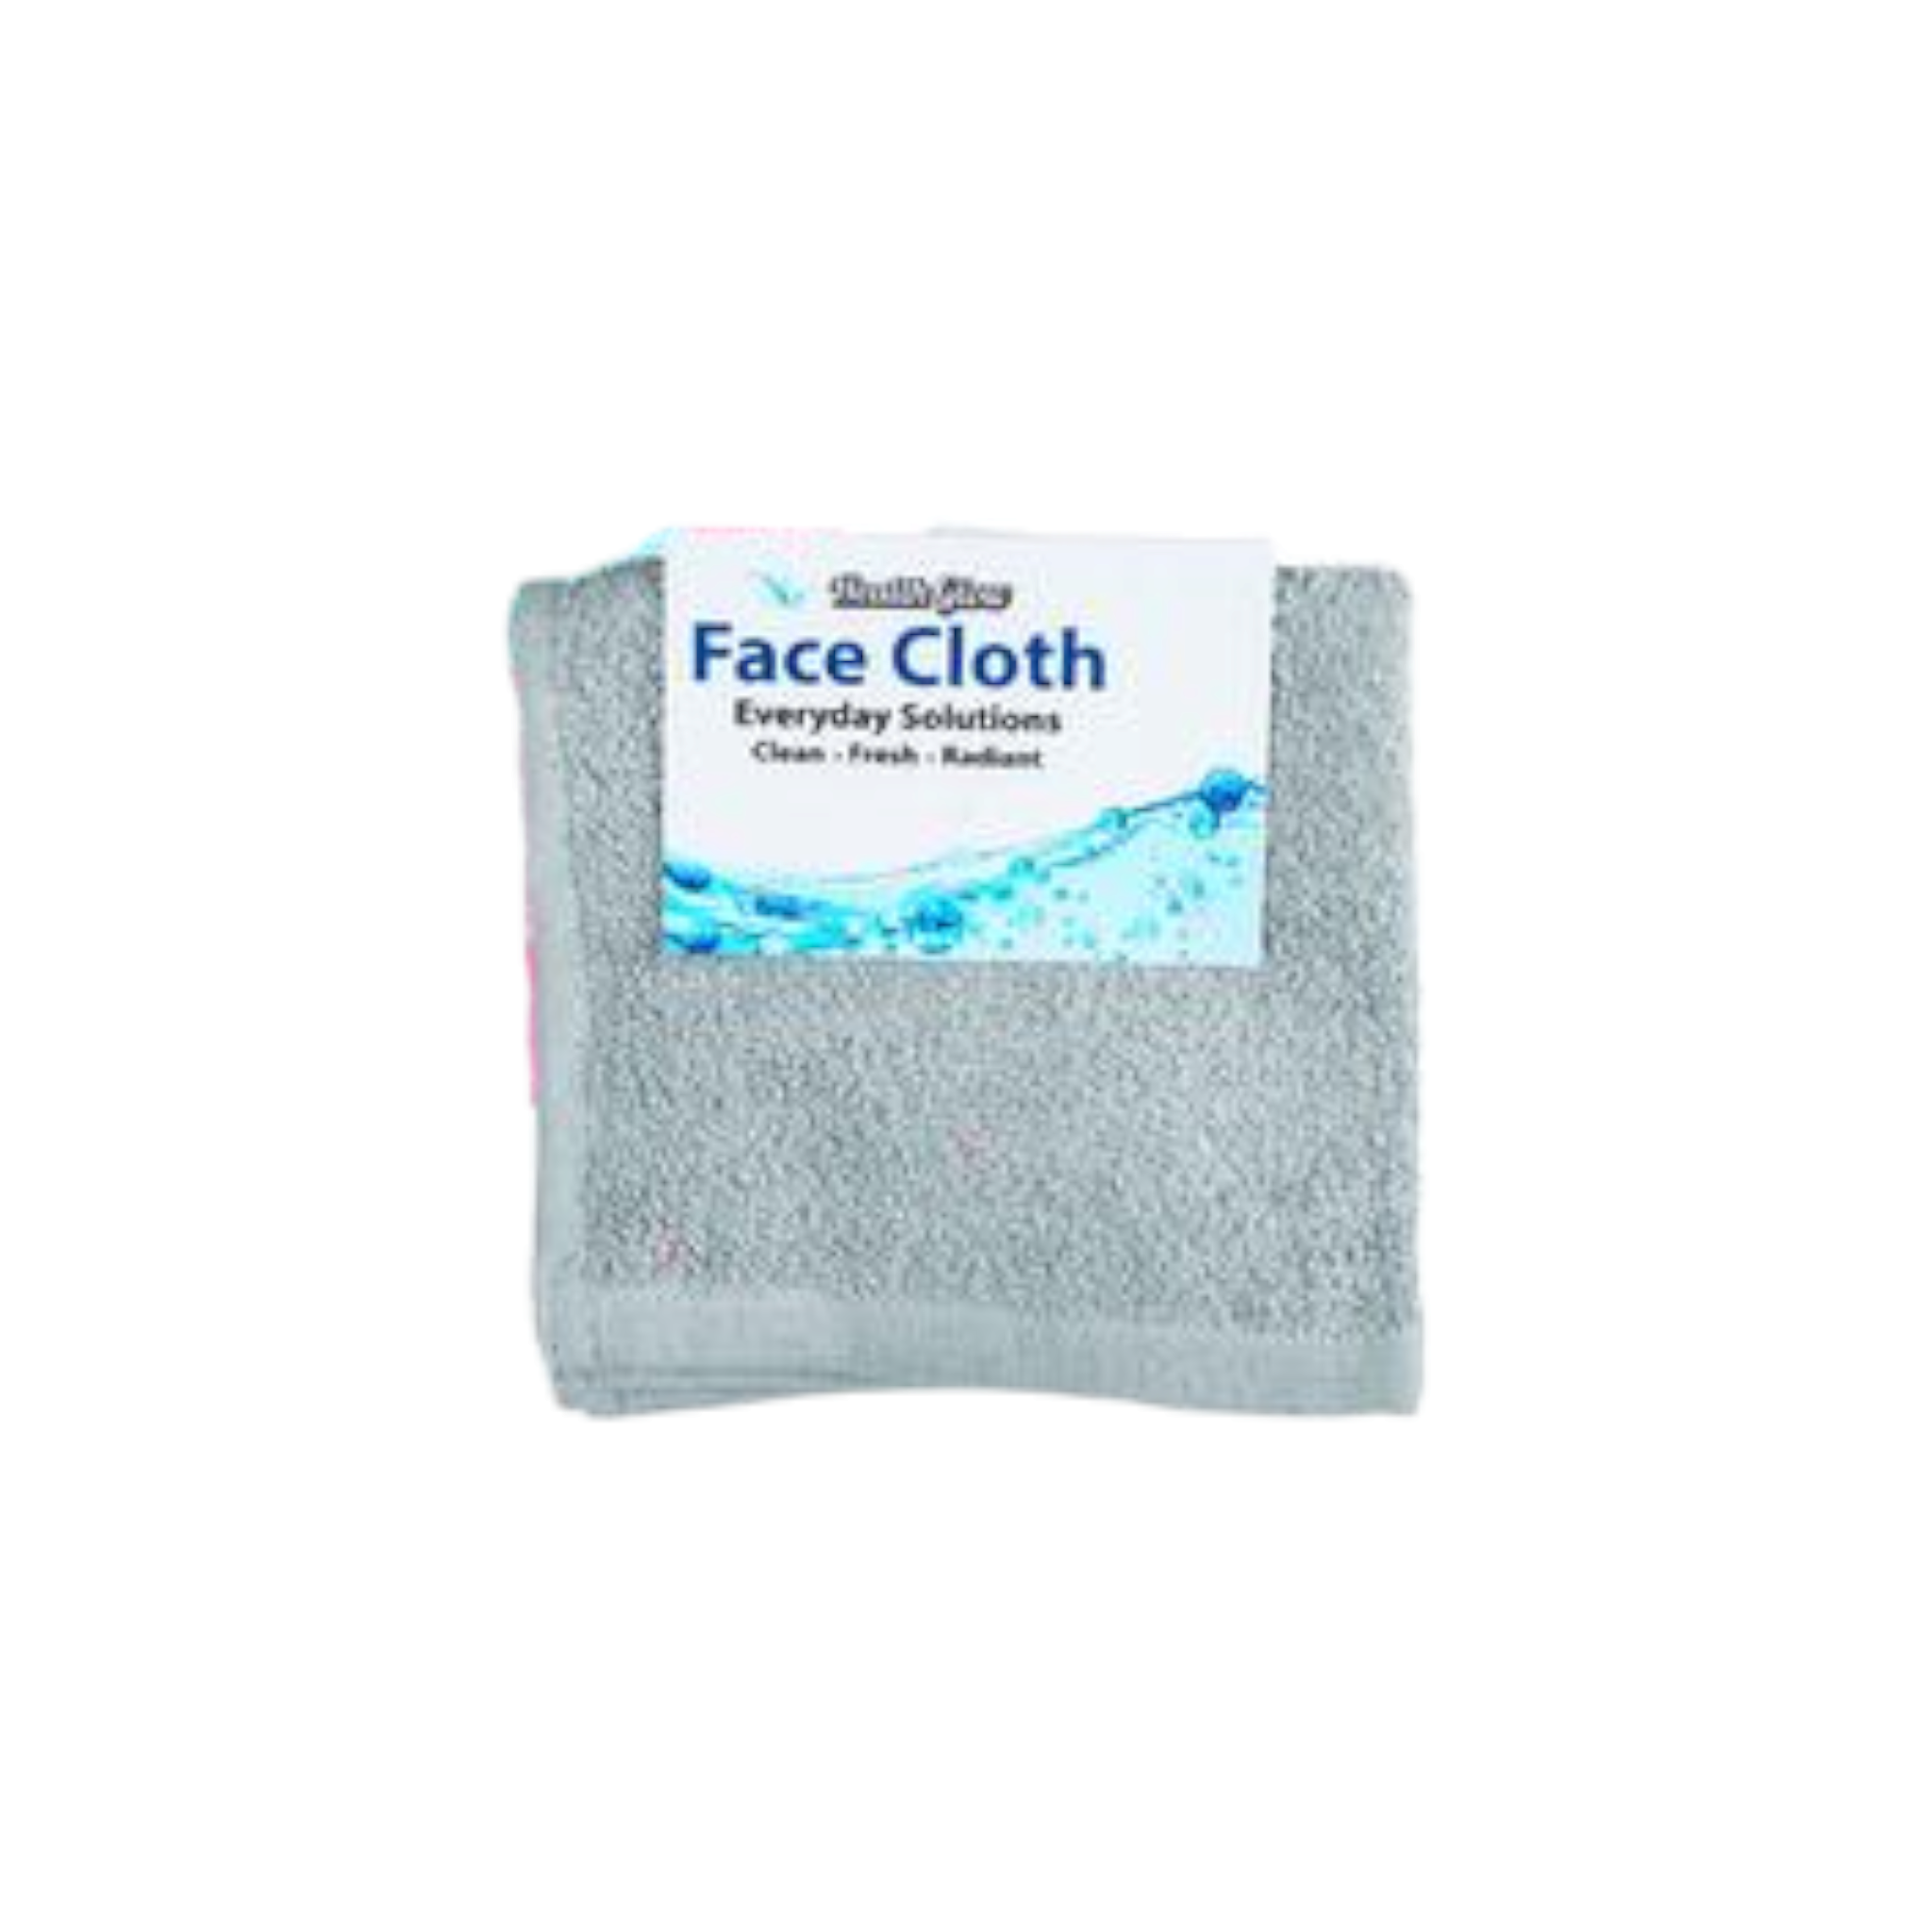 Face Cloth 30x30cm 34g Plain